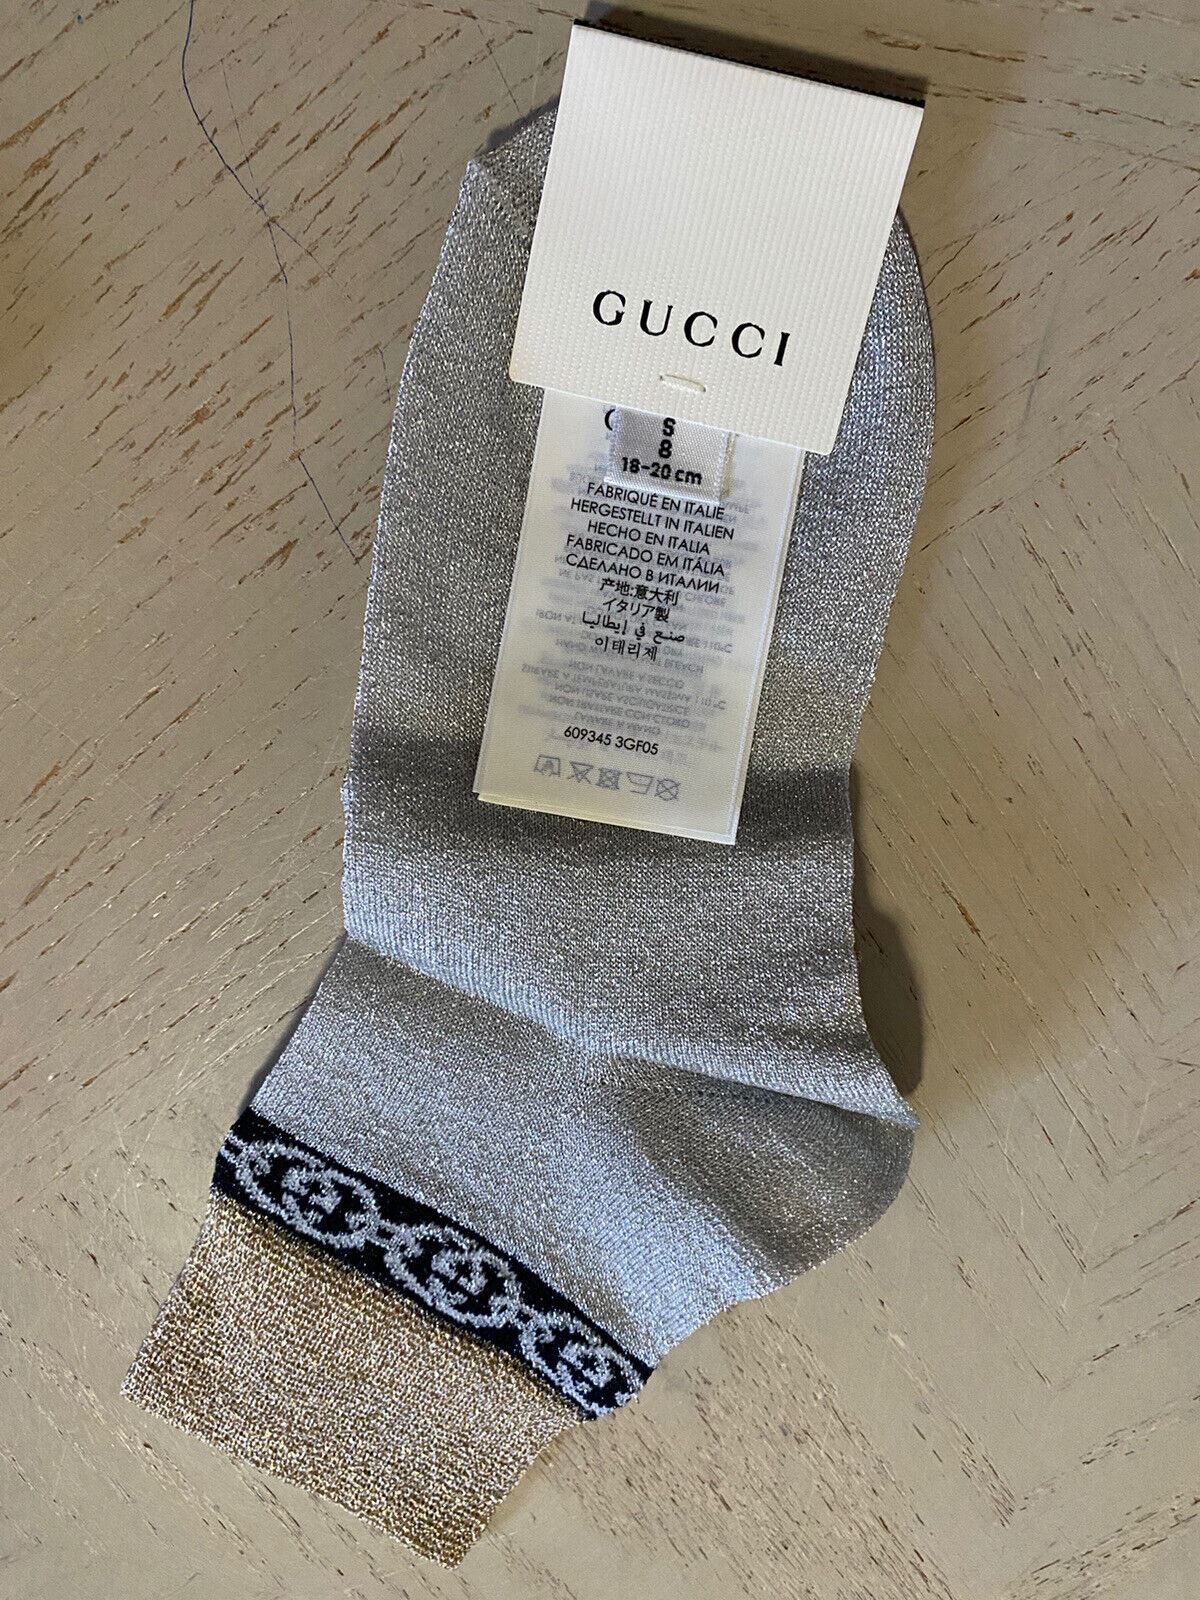 Мини-носки в греческом стиле NWT Gucci с монограммой Gucci, серебро/золото, размер S, Италия